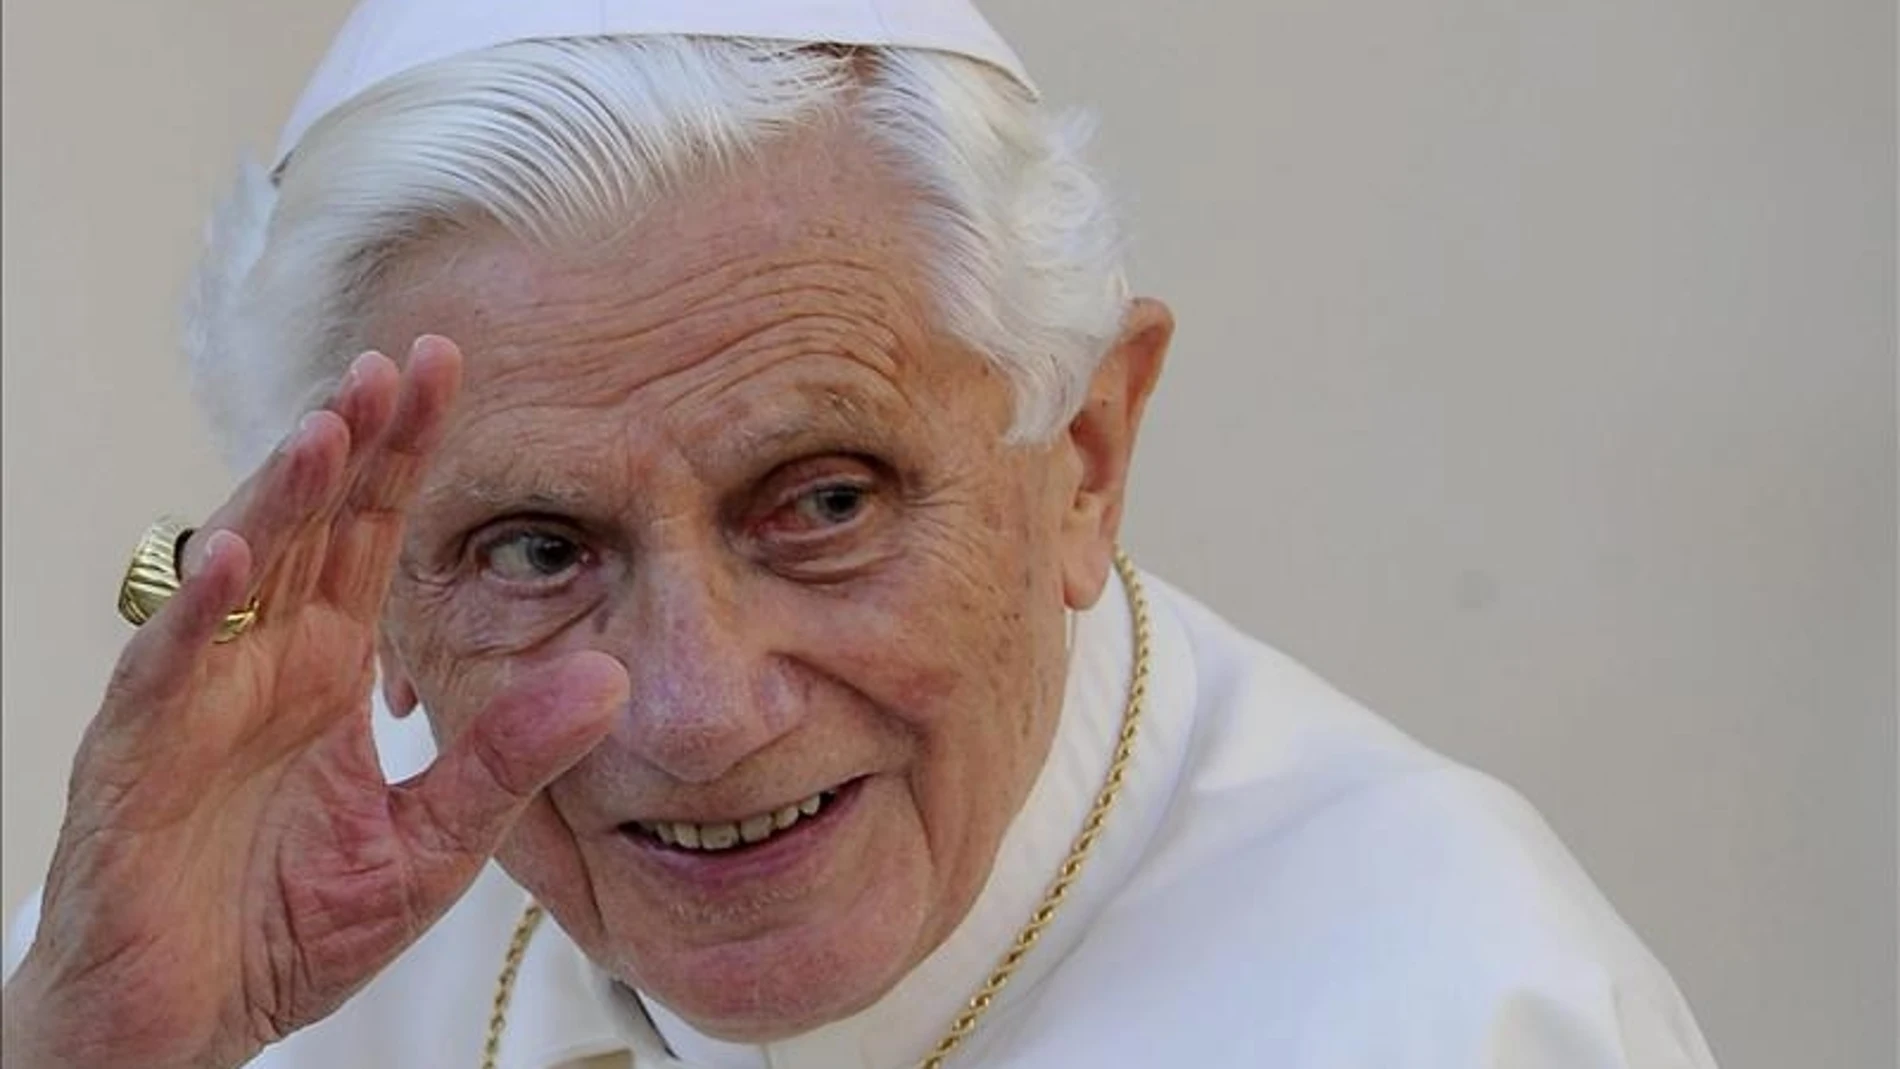 El Papa abandonará el pontificado el 28 de febrero